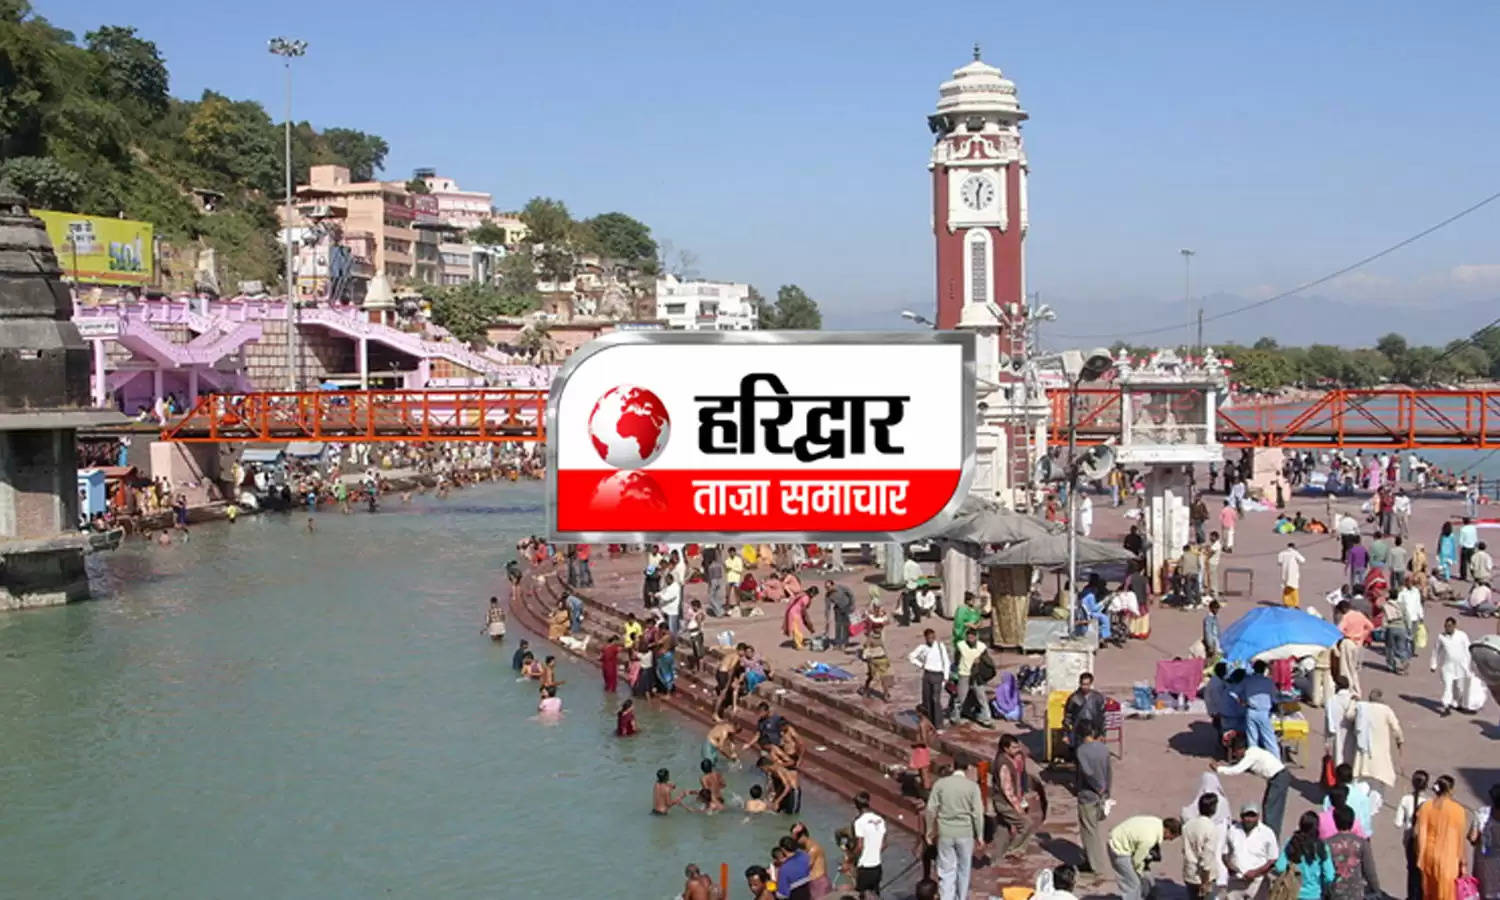 Uttarakhand News Bulletin : जाने हरिद्वार जिले की दिनभर की तमाम छोटी बड़ी खबरें सिर्फ एक क्लिक में... 